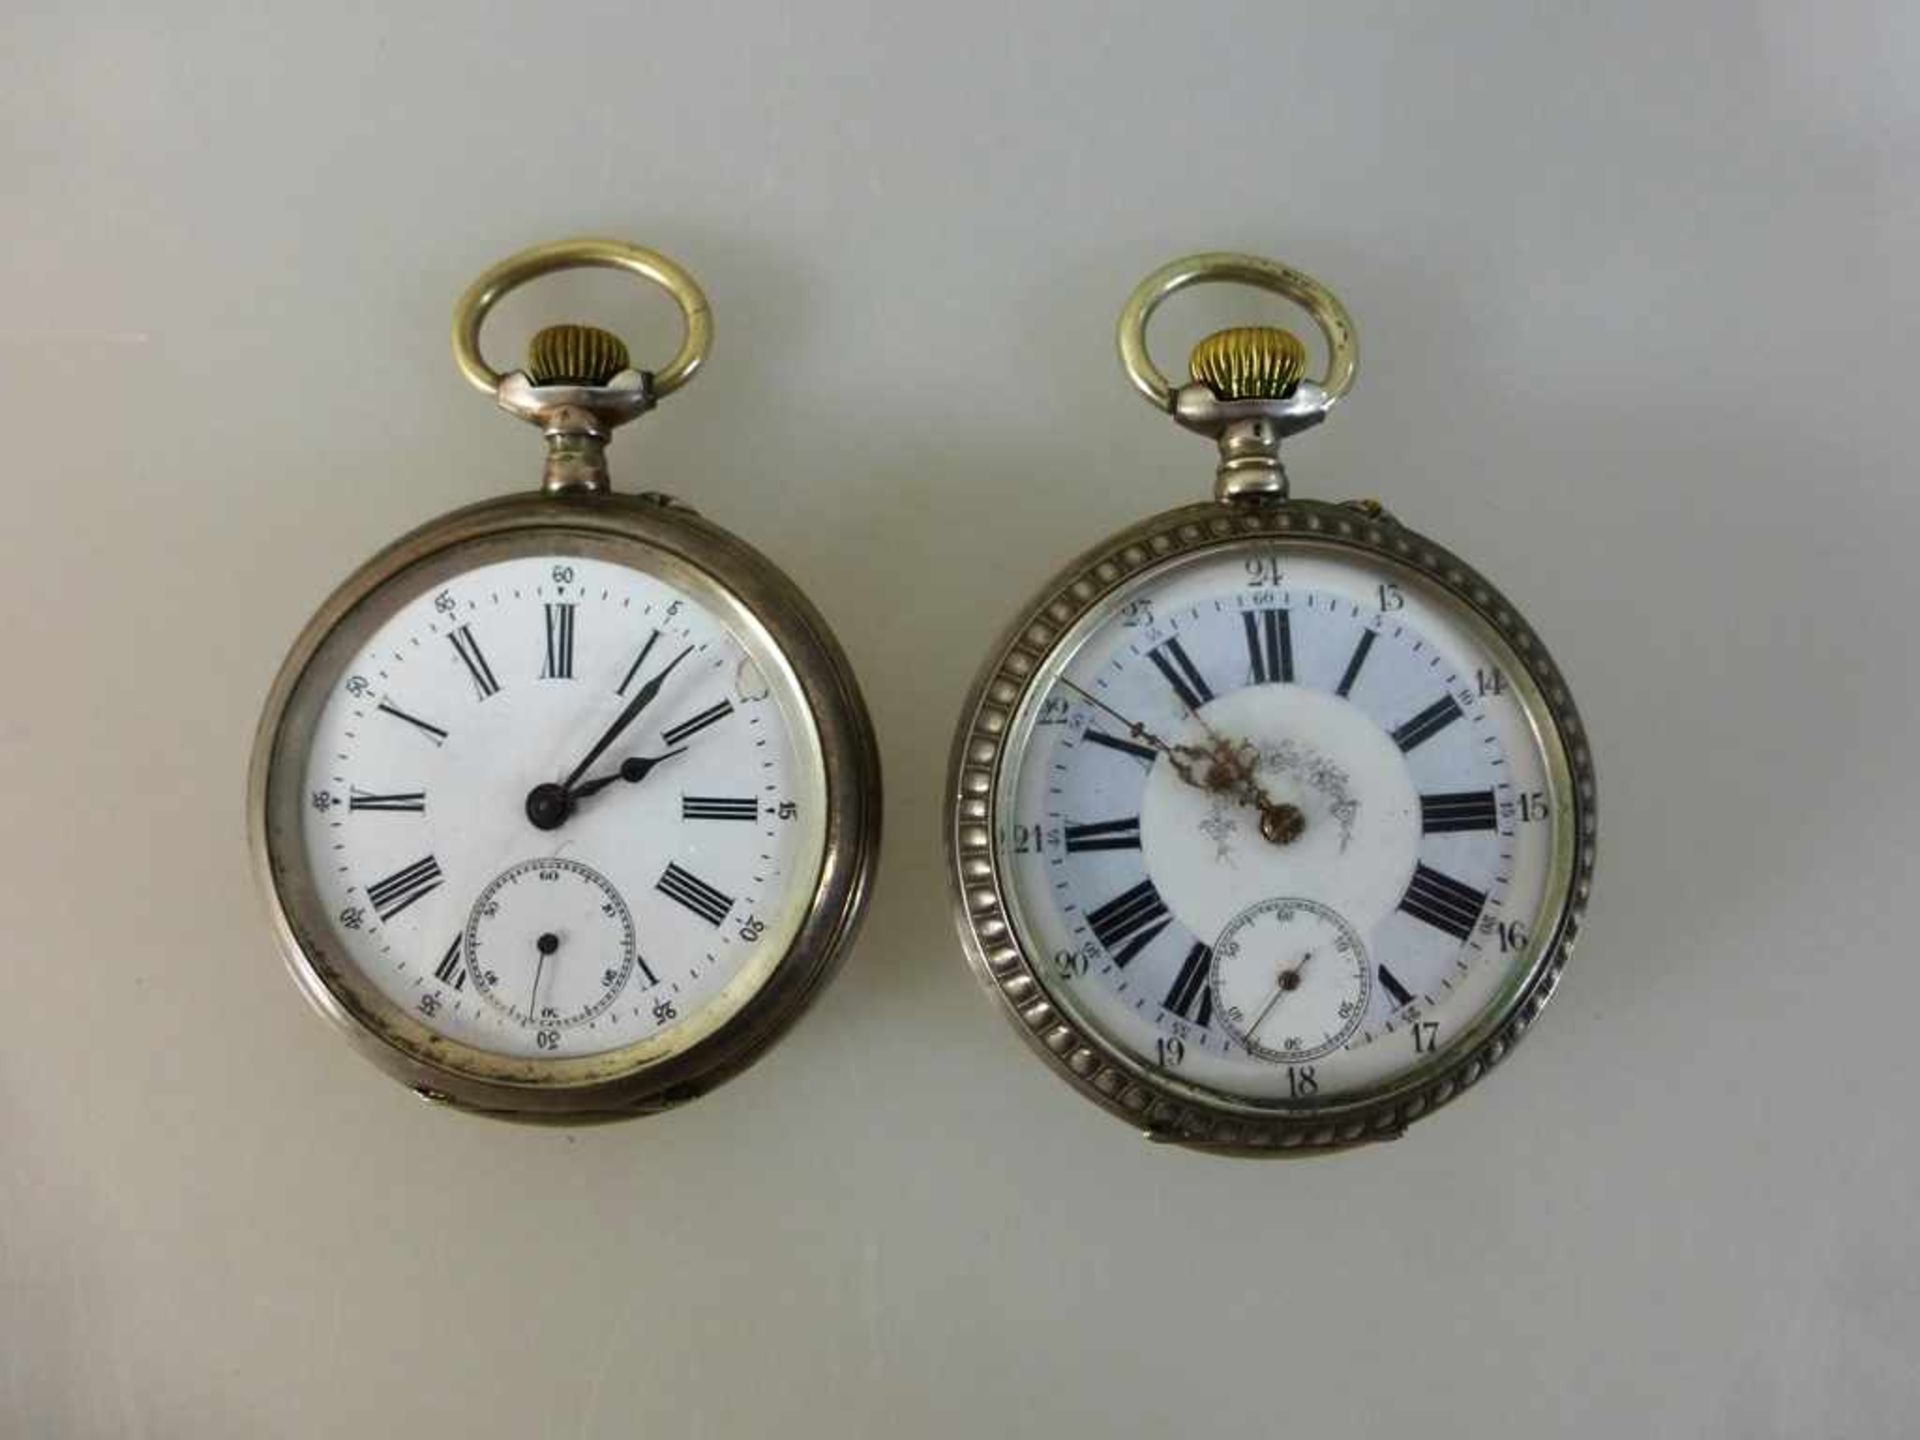 2 Herrentaschenuhren um 1900, Silber, eine Uhr mit Eisenbahnmotiv, jeweils Zylinderwerk,eine Uhr